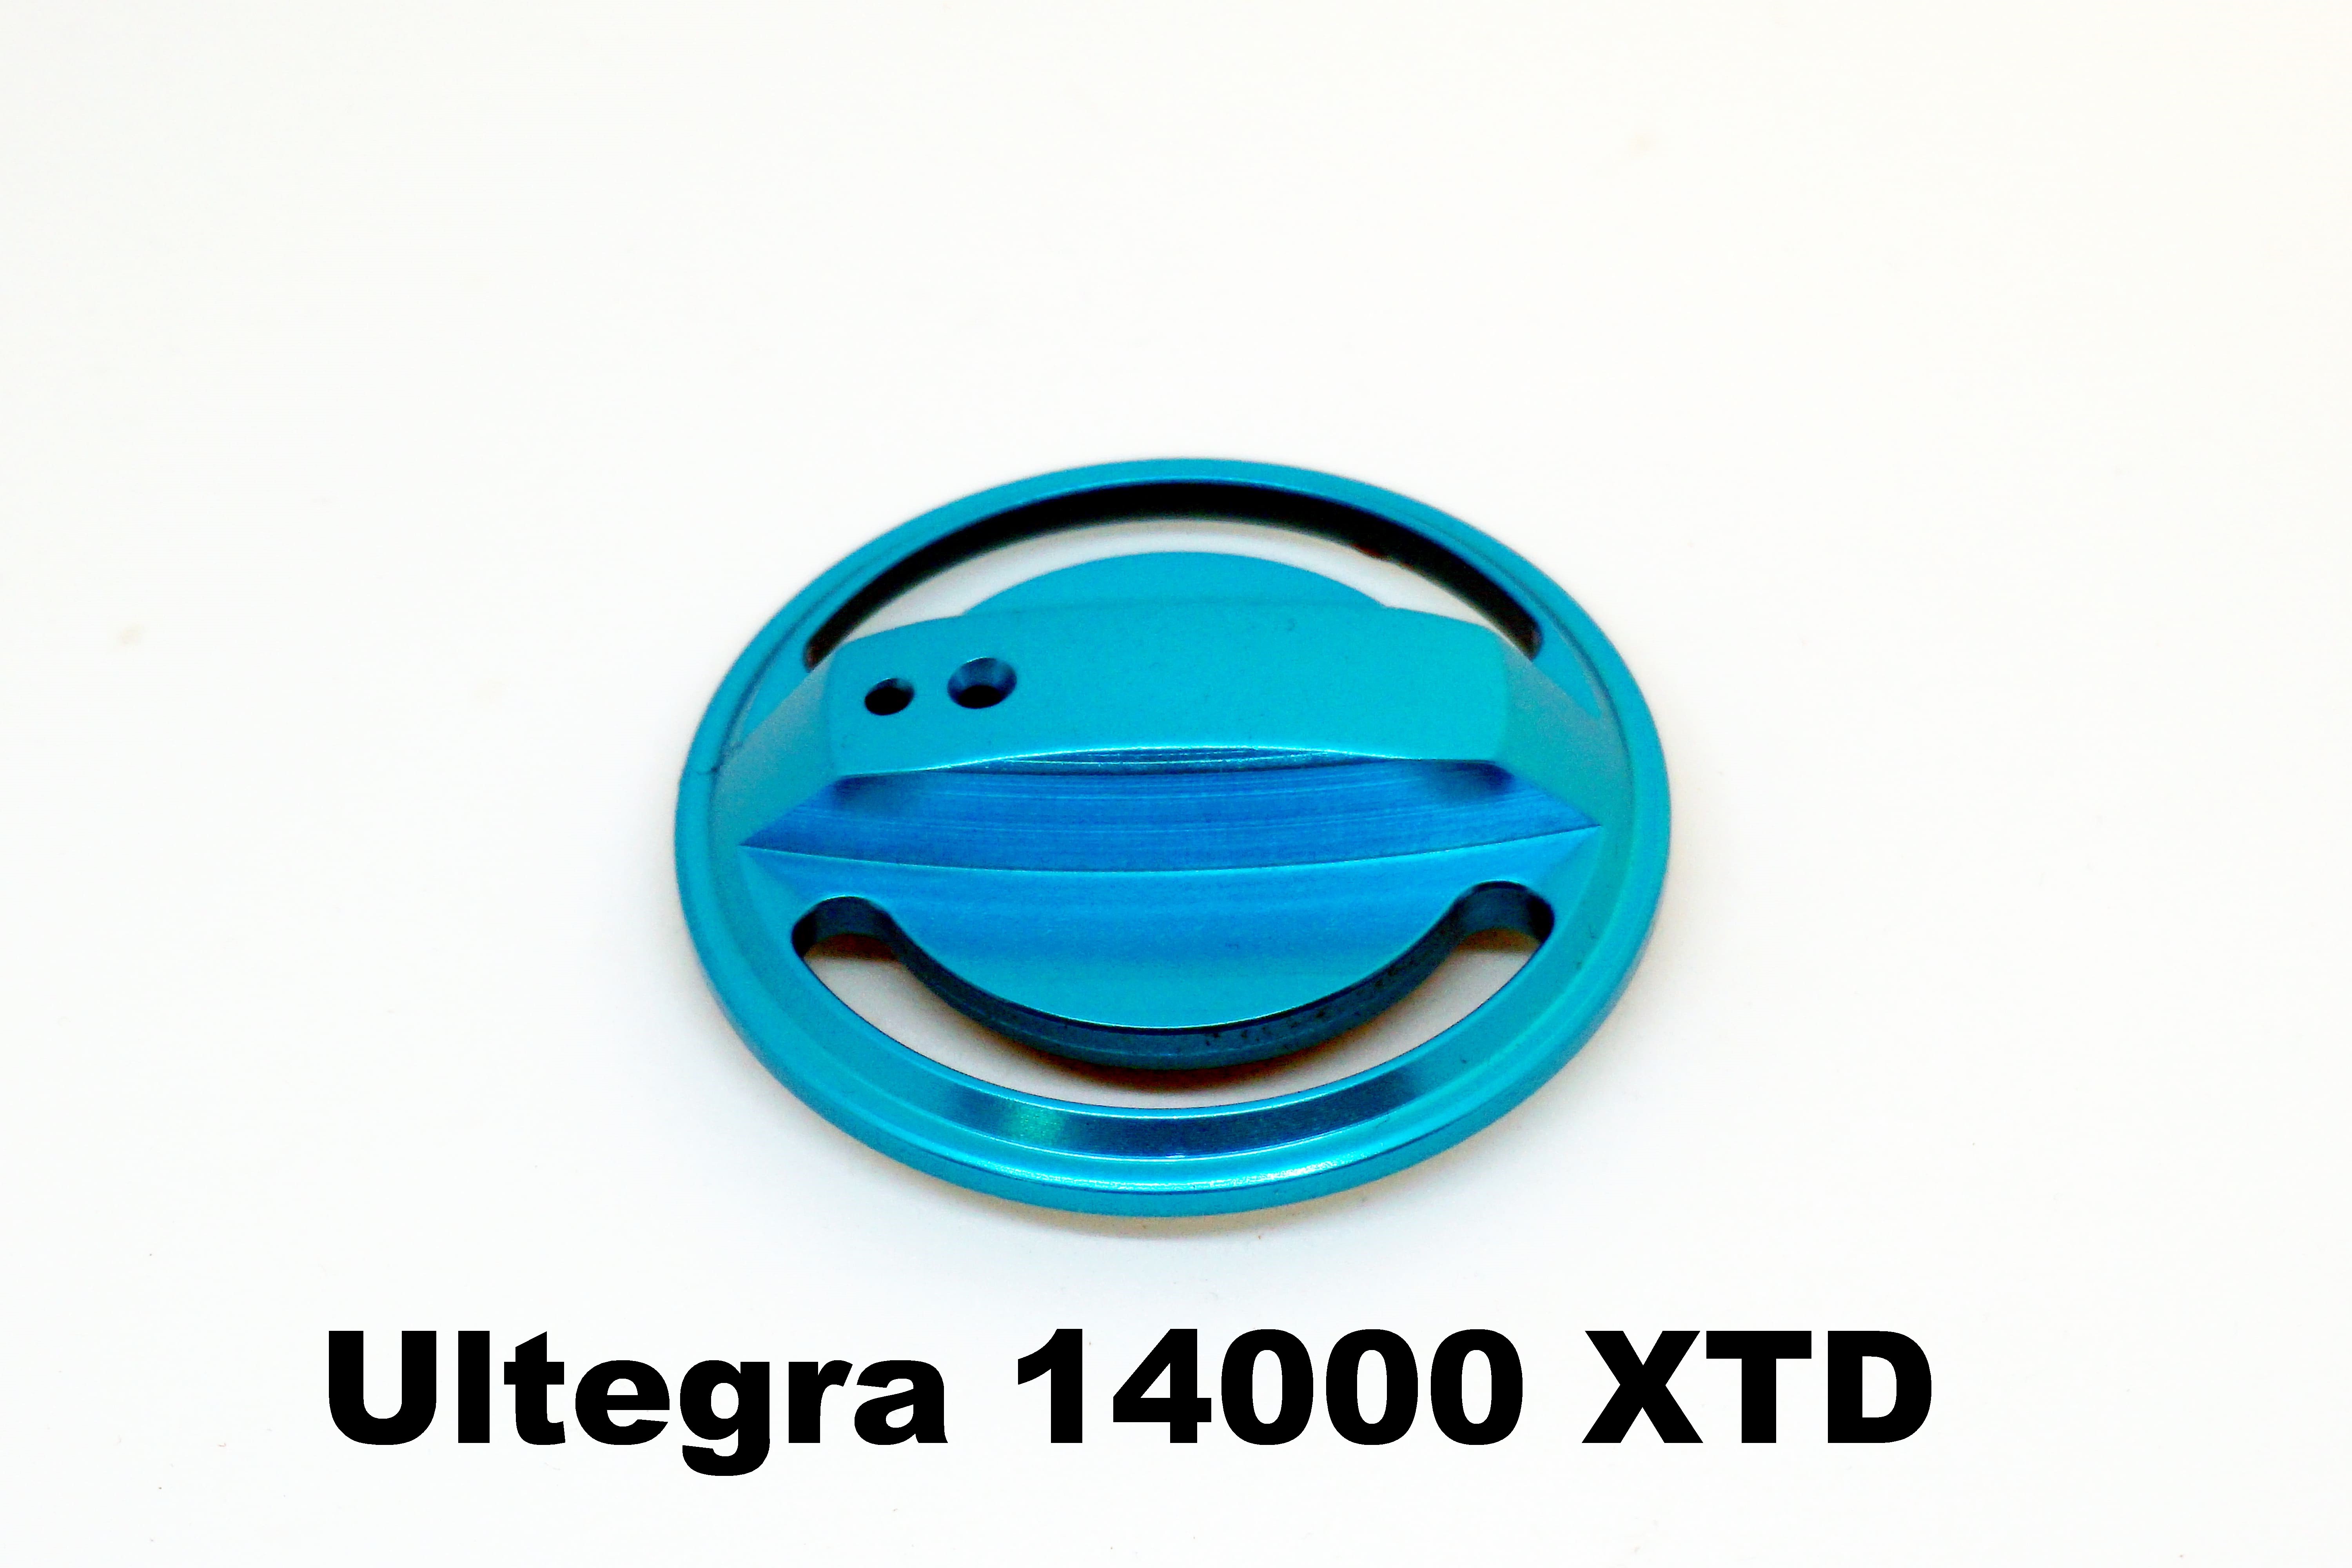 Drag Knob for Ultegra 14000 XTD